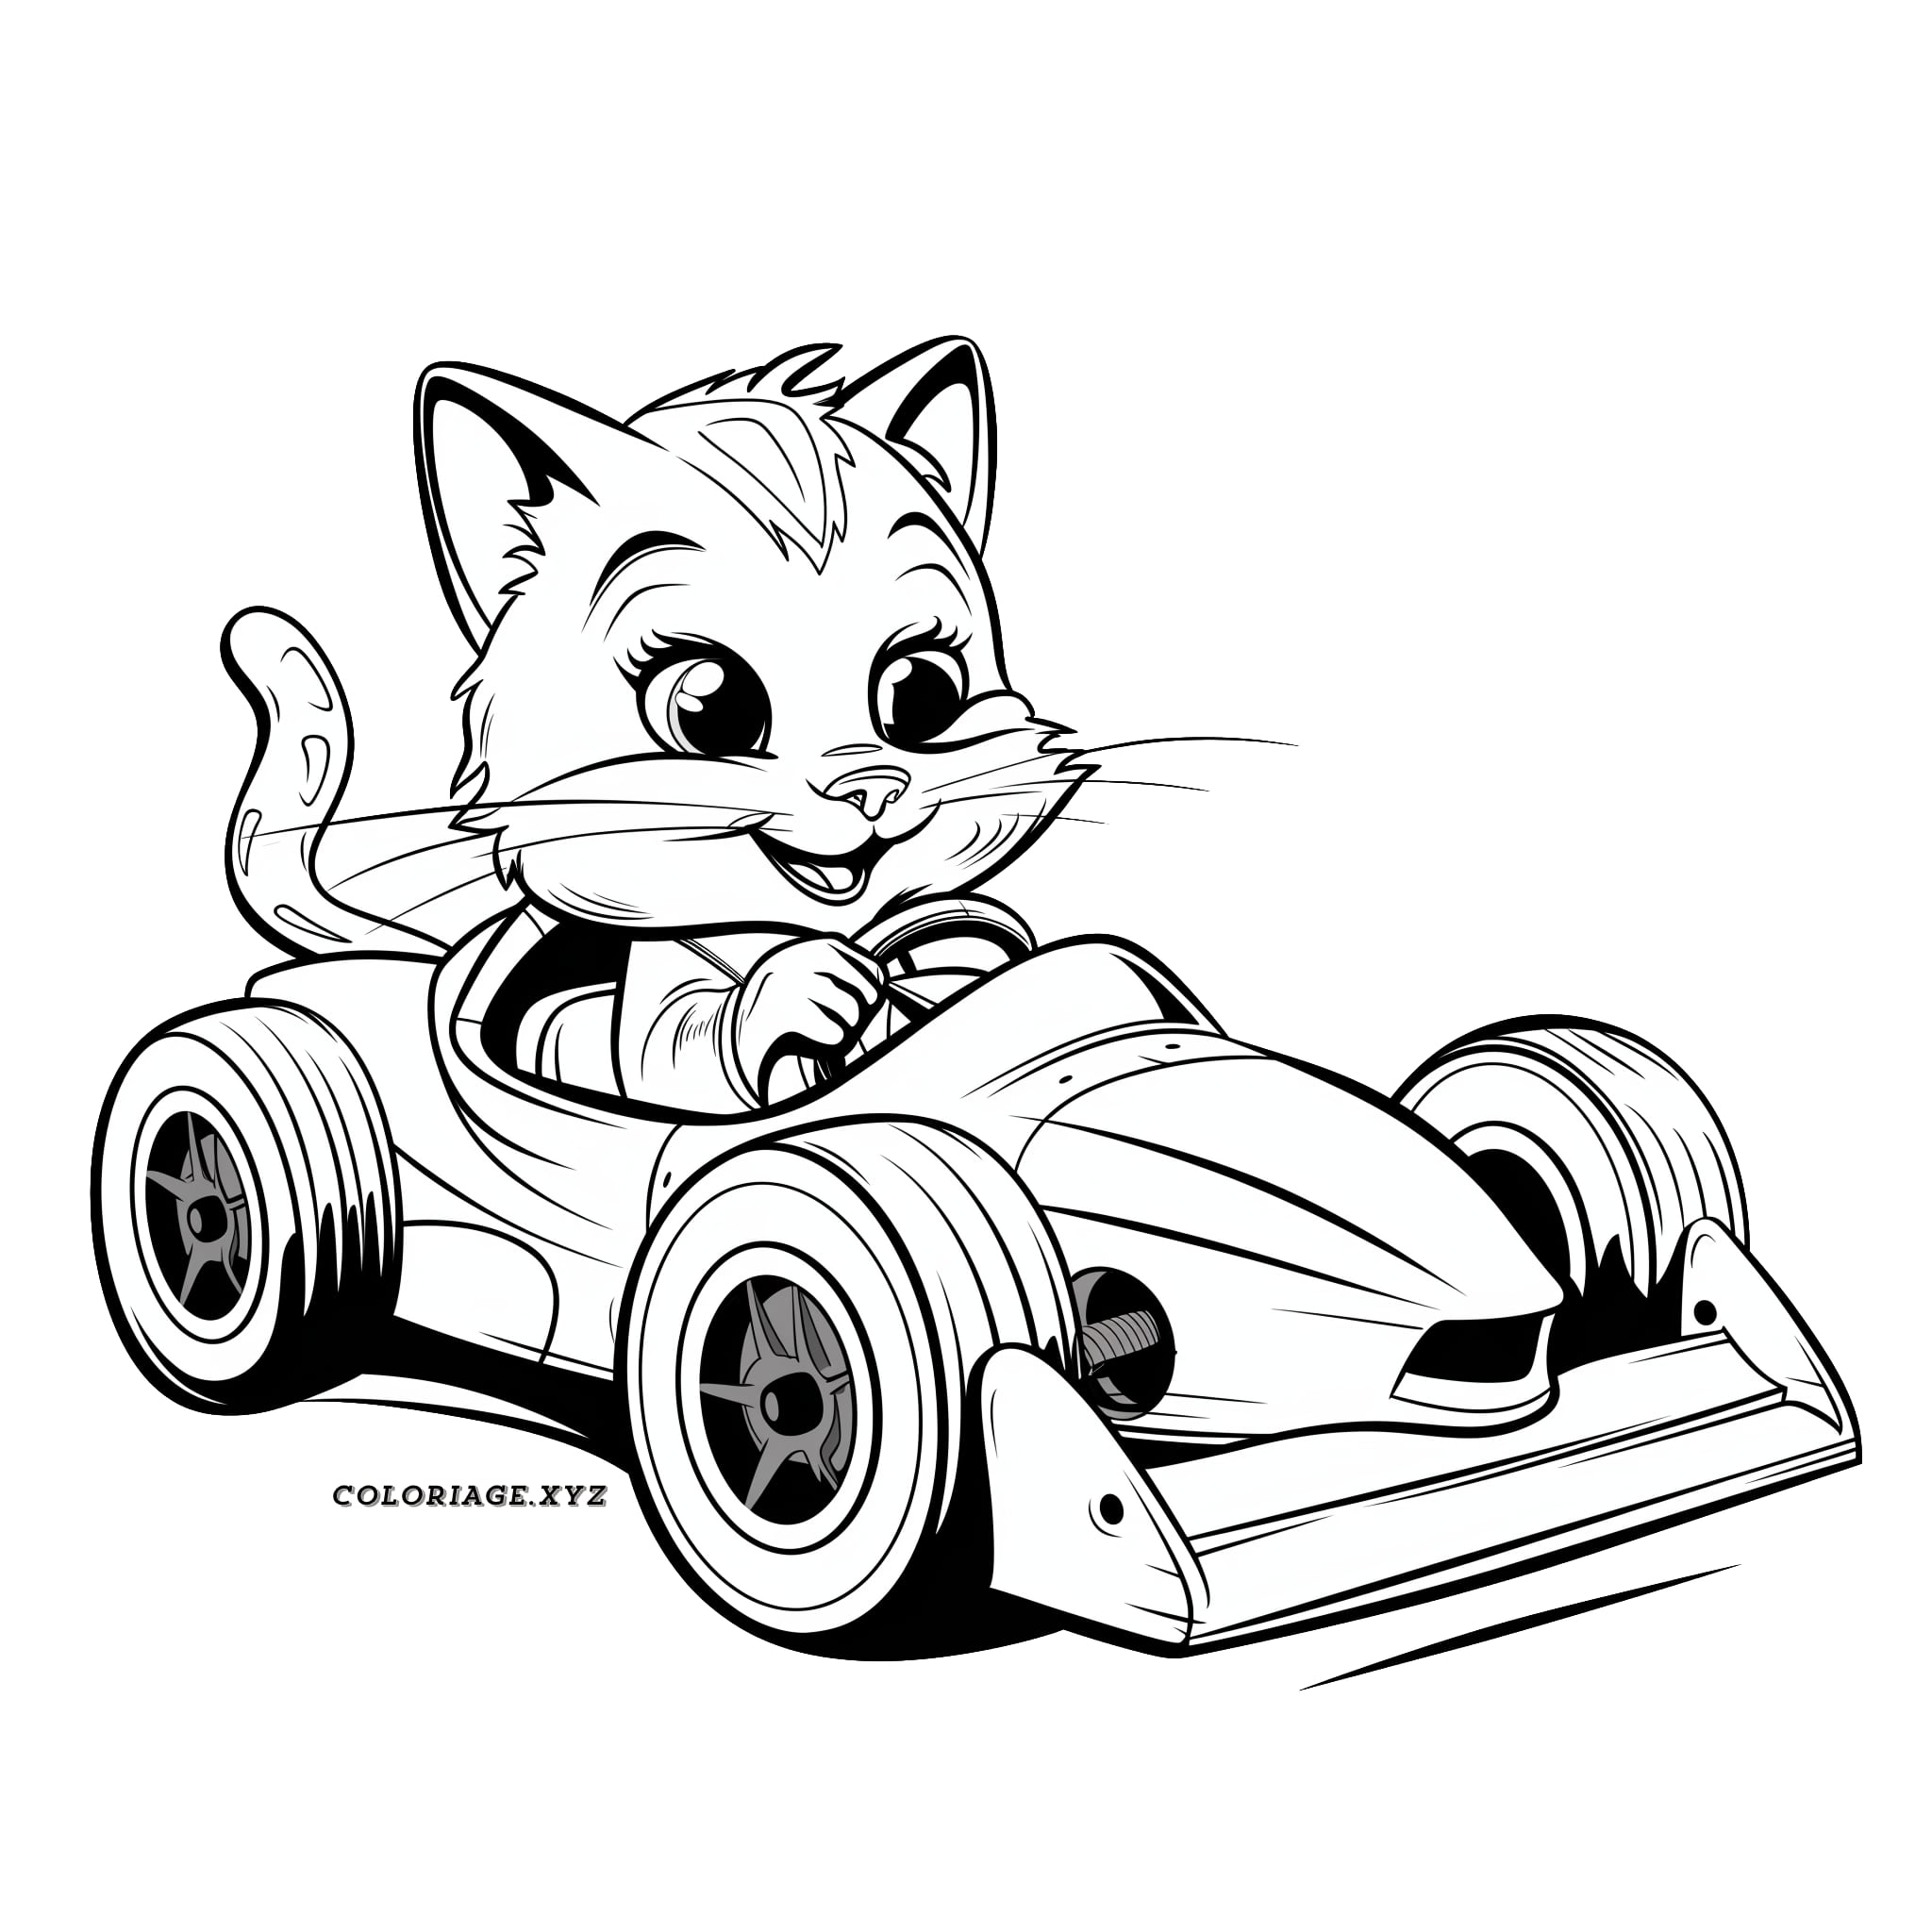 Coloriage chat dans une Formule 1